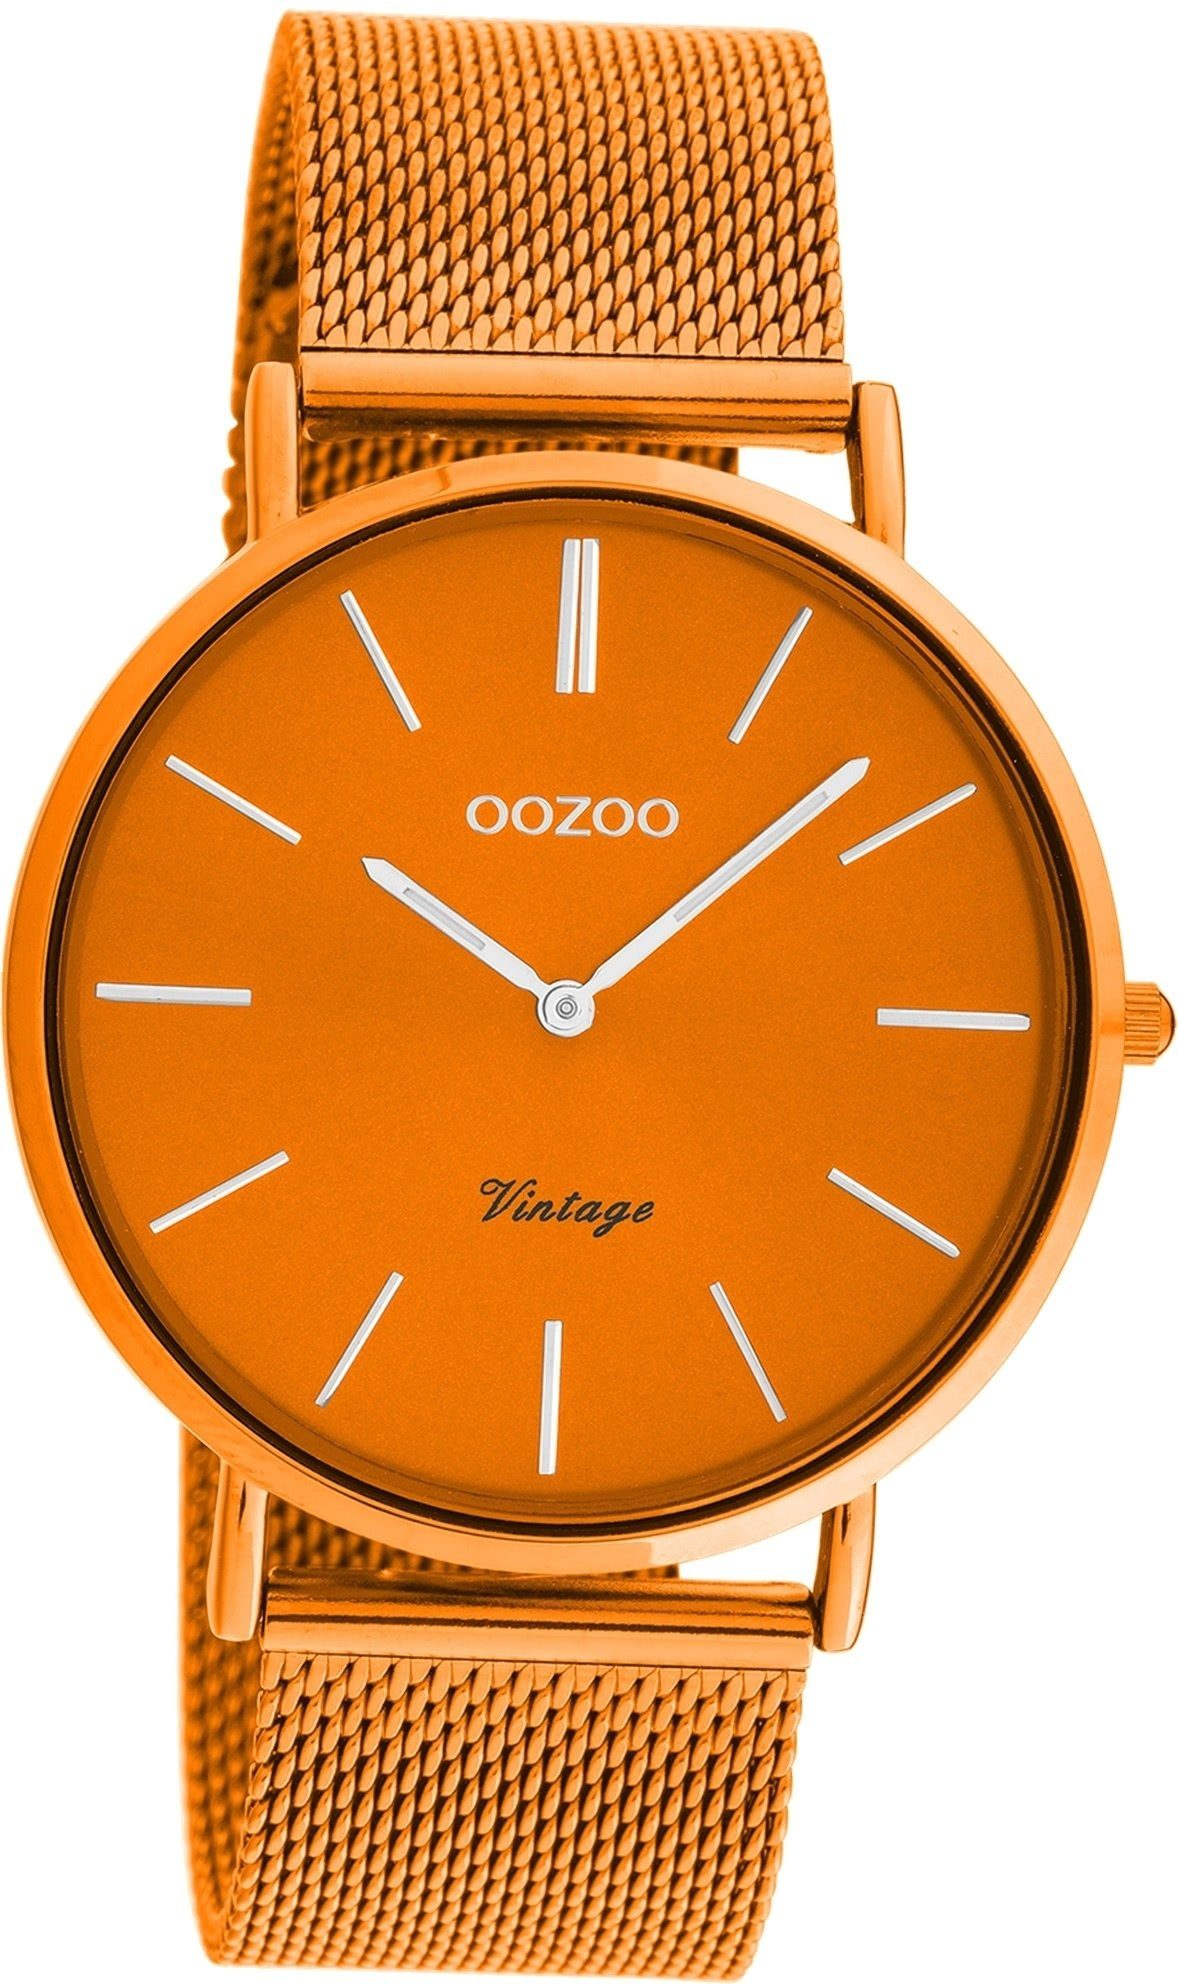 OOZOO Quarzuhr (ca. Series, Vintage 40mm) Mesharmband Gehäuse, groß orange, Damen Armbanduhr Damenuhr rundes Metall, Oozoo